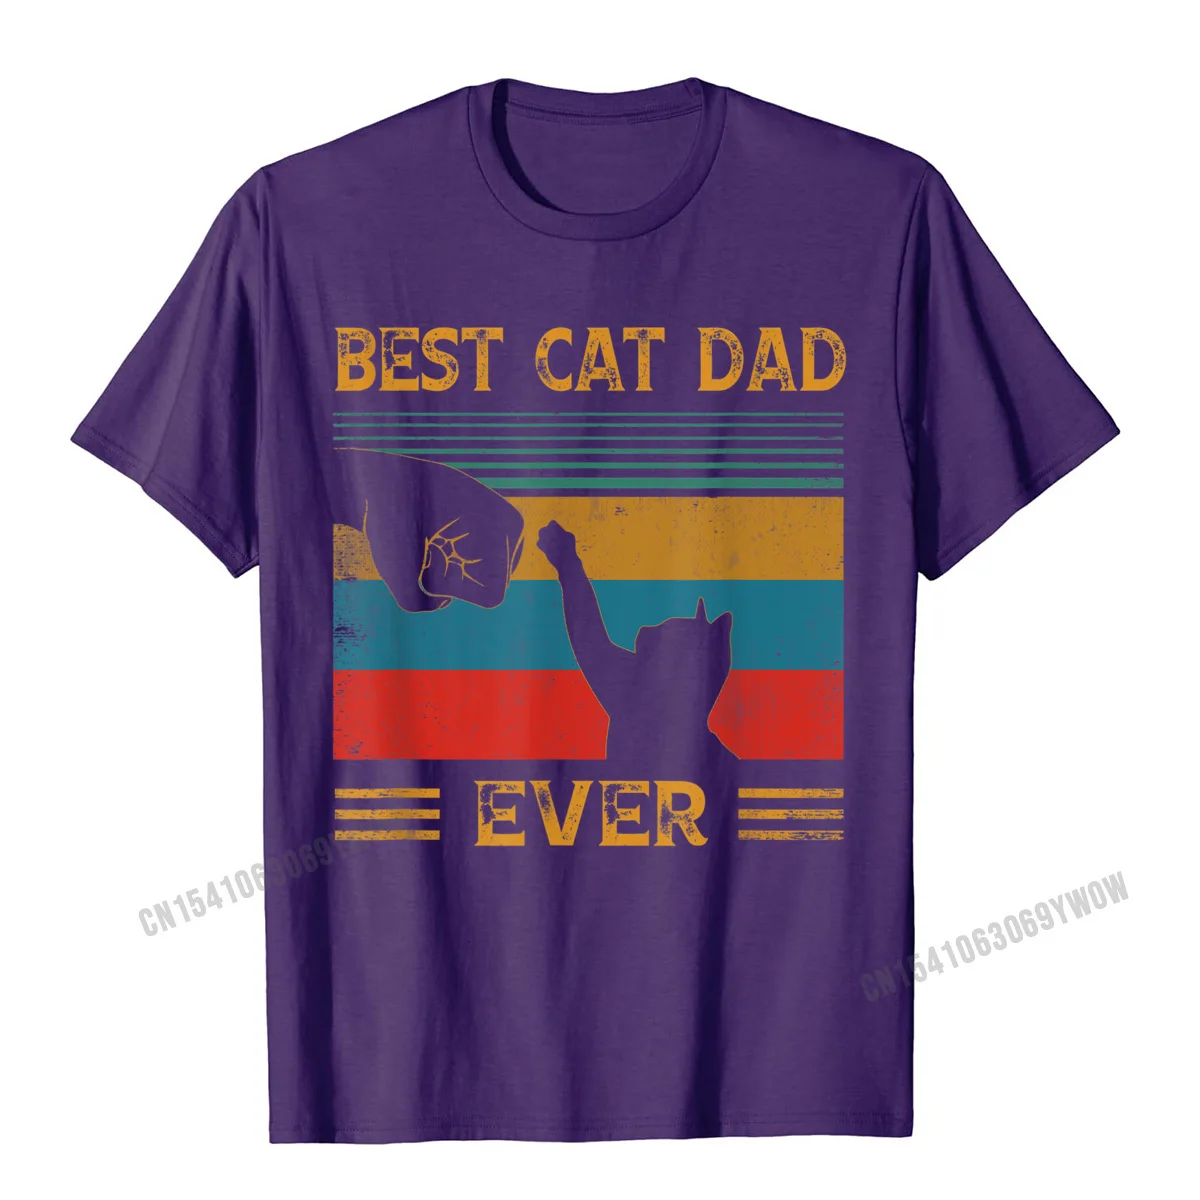 Мужская Винтажная футболка с надписью Best Cat Dad Ever Bump | одежда